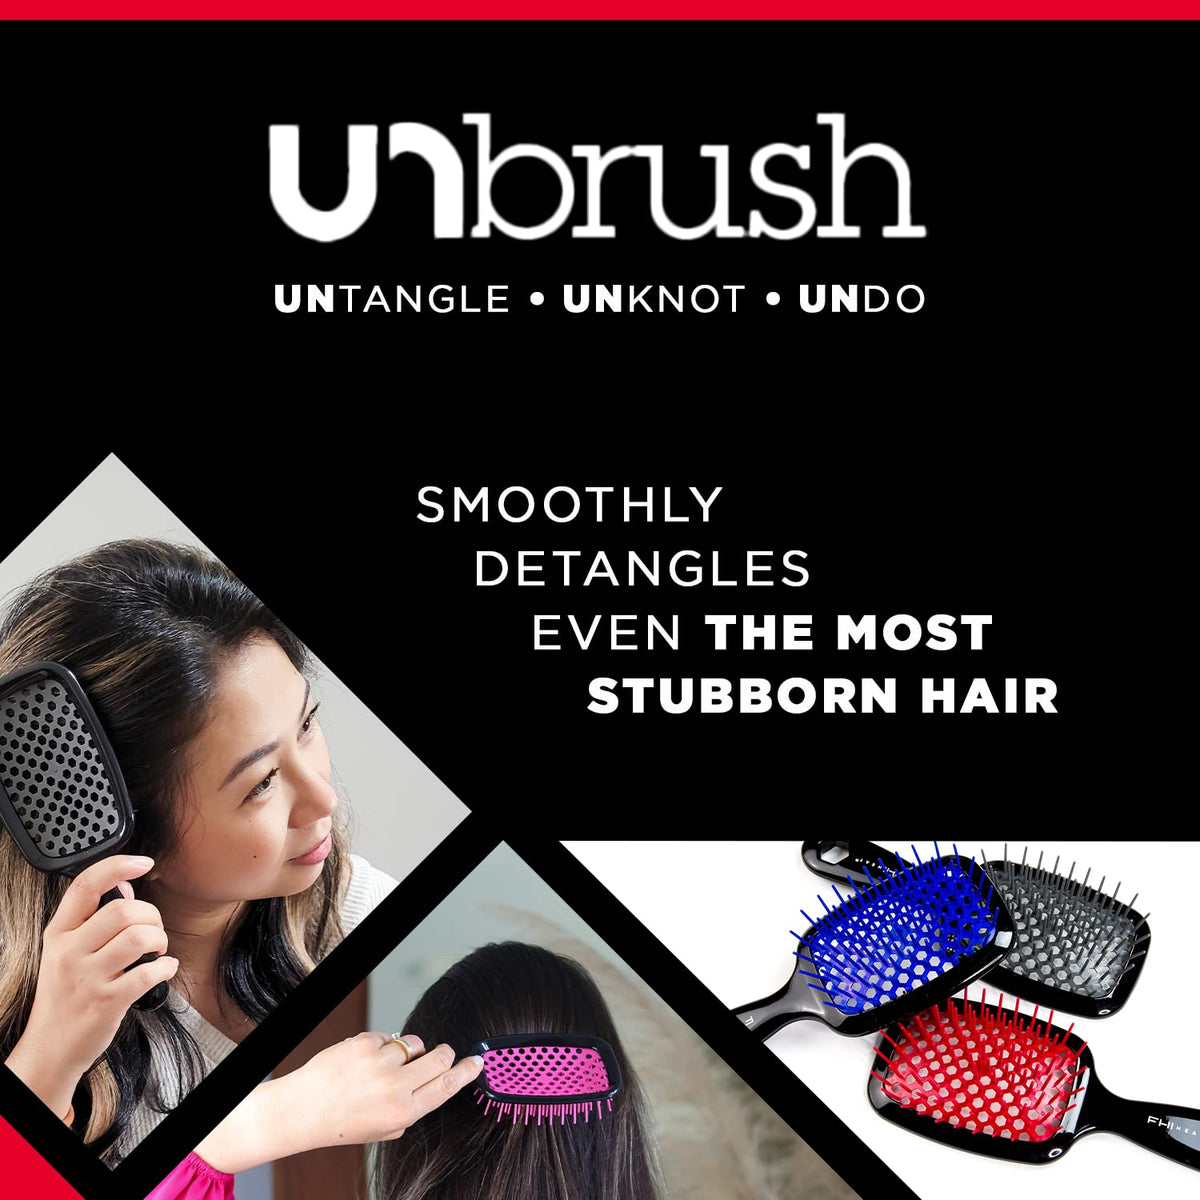 UNbrush - Detangling Hair Brush - Rose Quartz